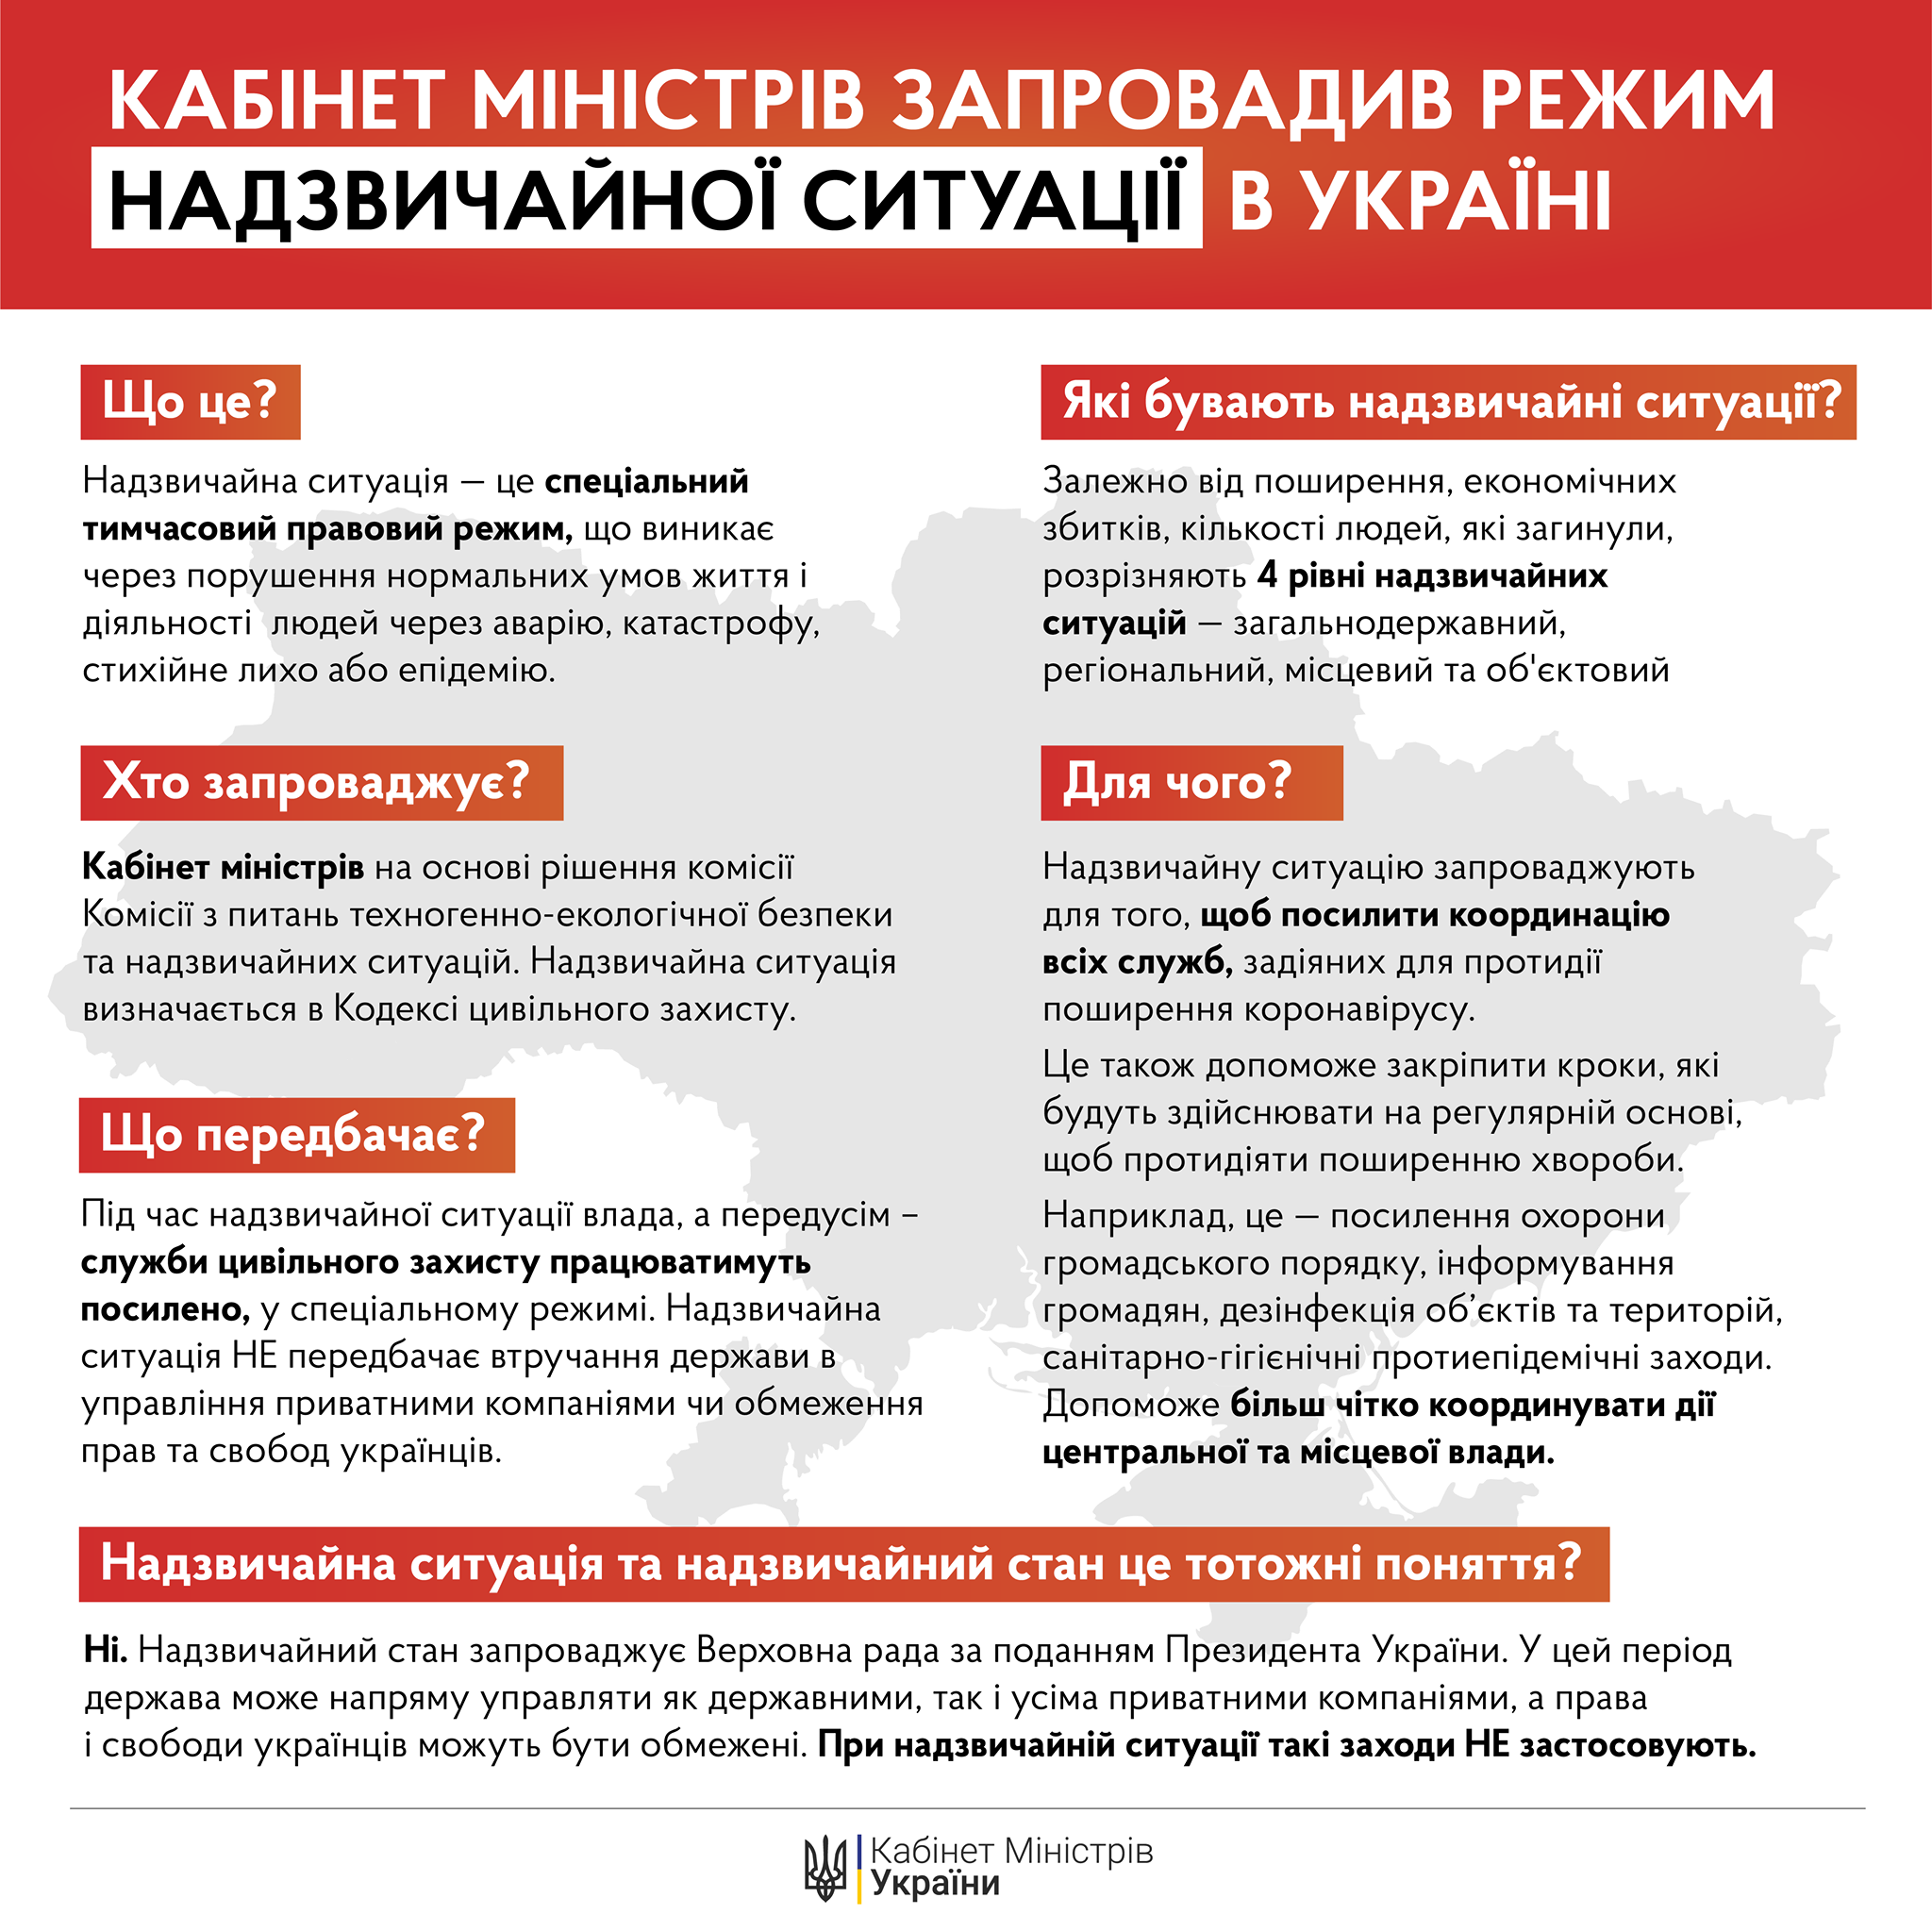 Режим надзвичайної ситуації запроваджений по всій території України на 30 днів